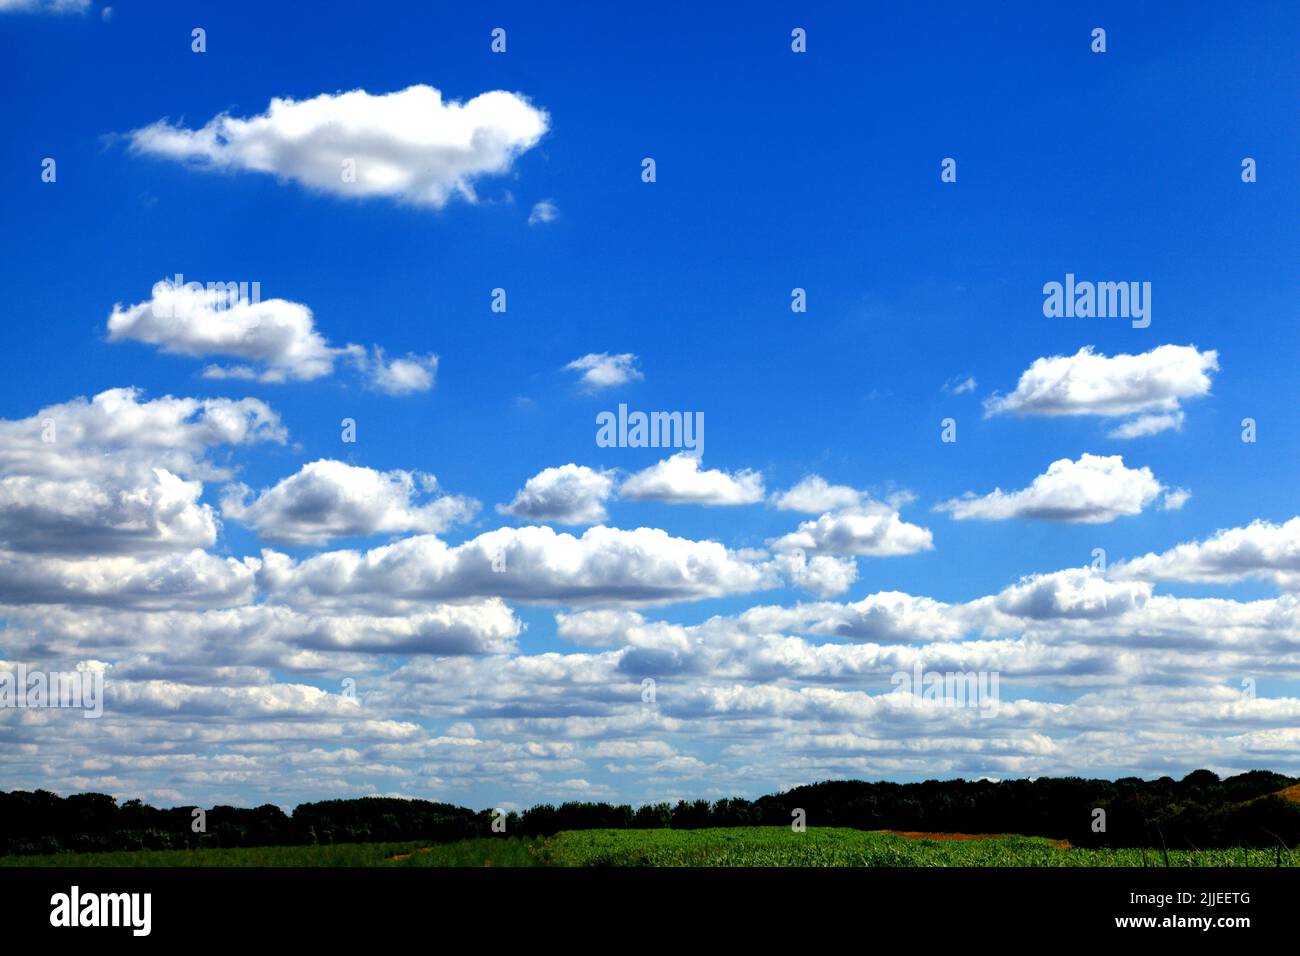 Nuages blancs, cumulus, ciel bleu, nuage, ciel, Forêt, arbres en arrière-plan Angleterre, Royaume-Uni Banque D'Images